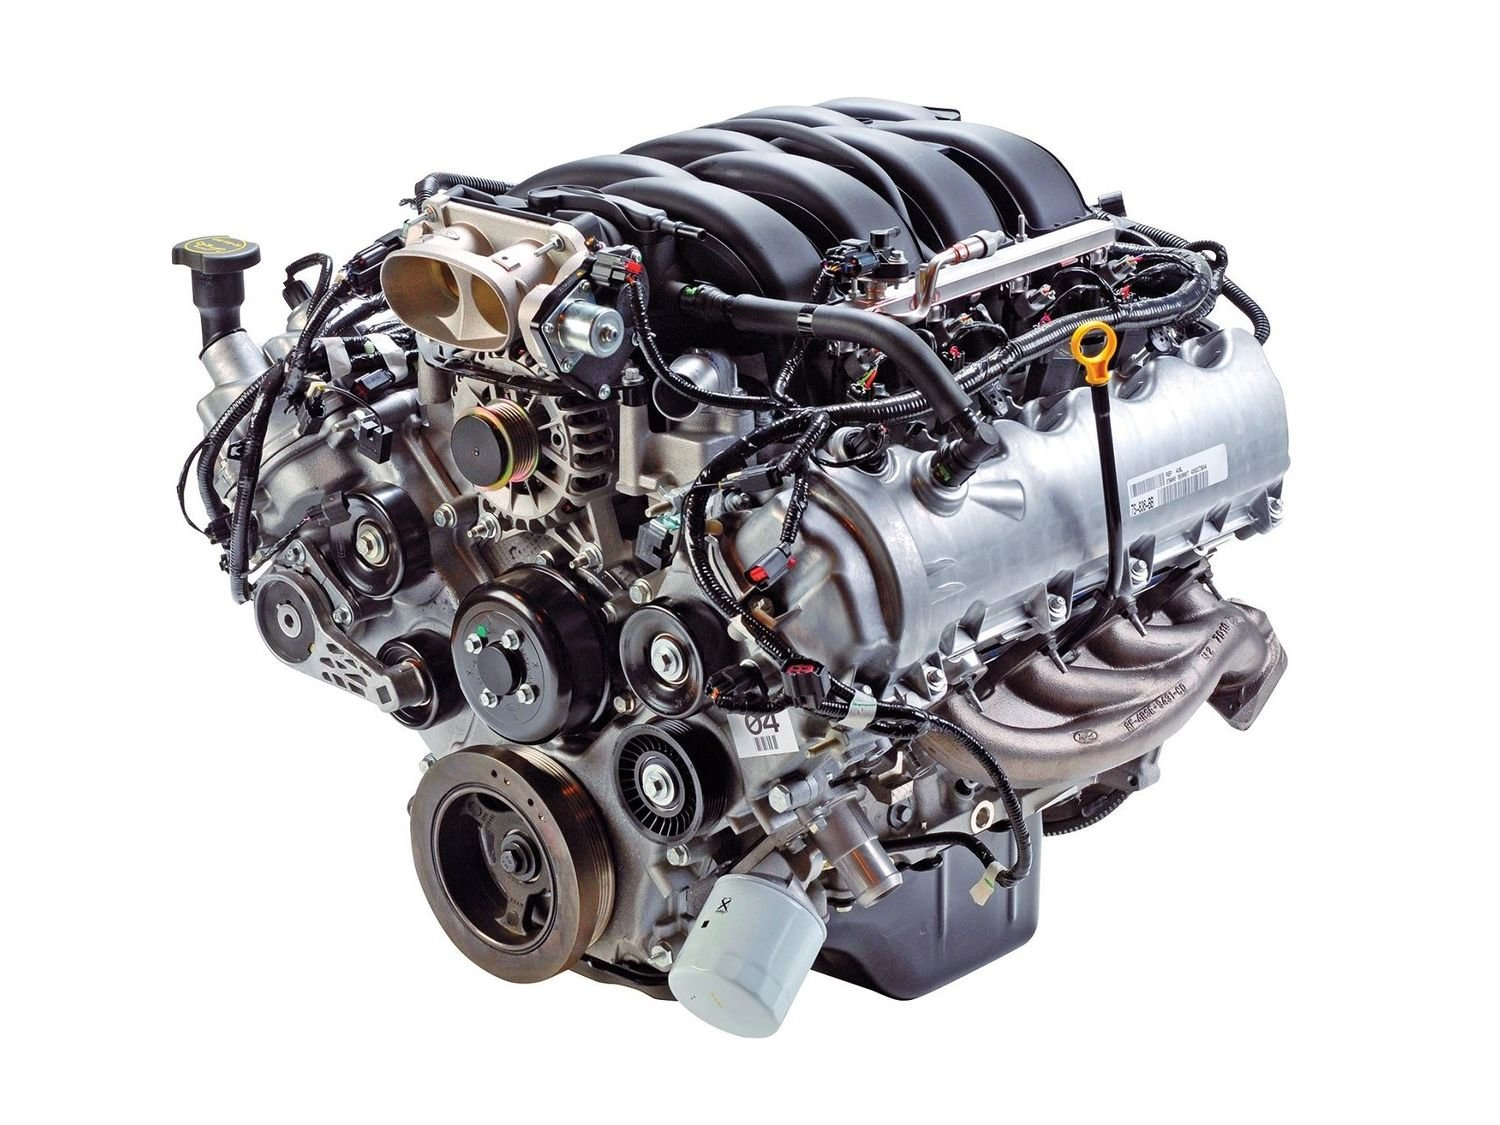 Купить двигатель v6. 4.6 L Modular SOHC v8. Двигатель Форд 4.6 v8. Двигатель Форд эксплорер 4.6 v8. Ford Triton 5.4l v8.